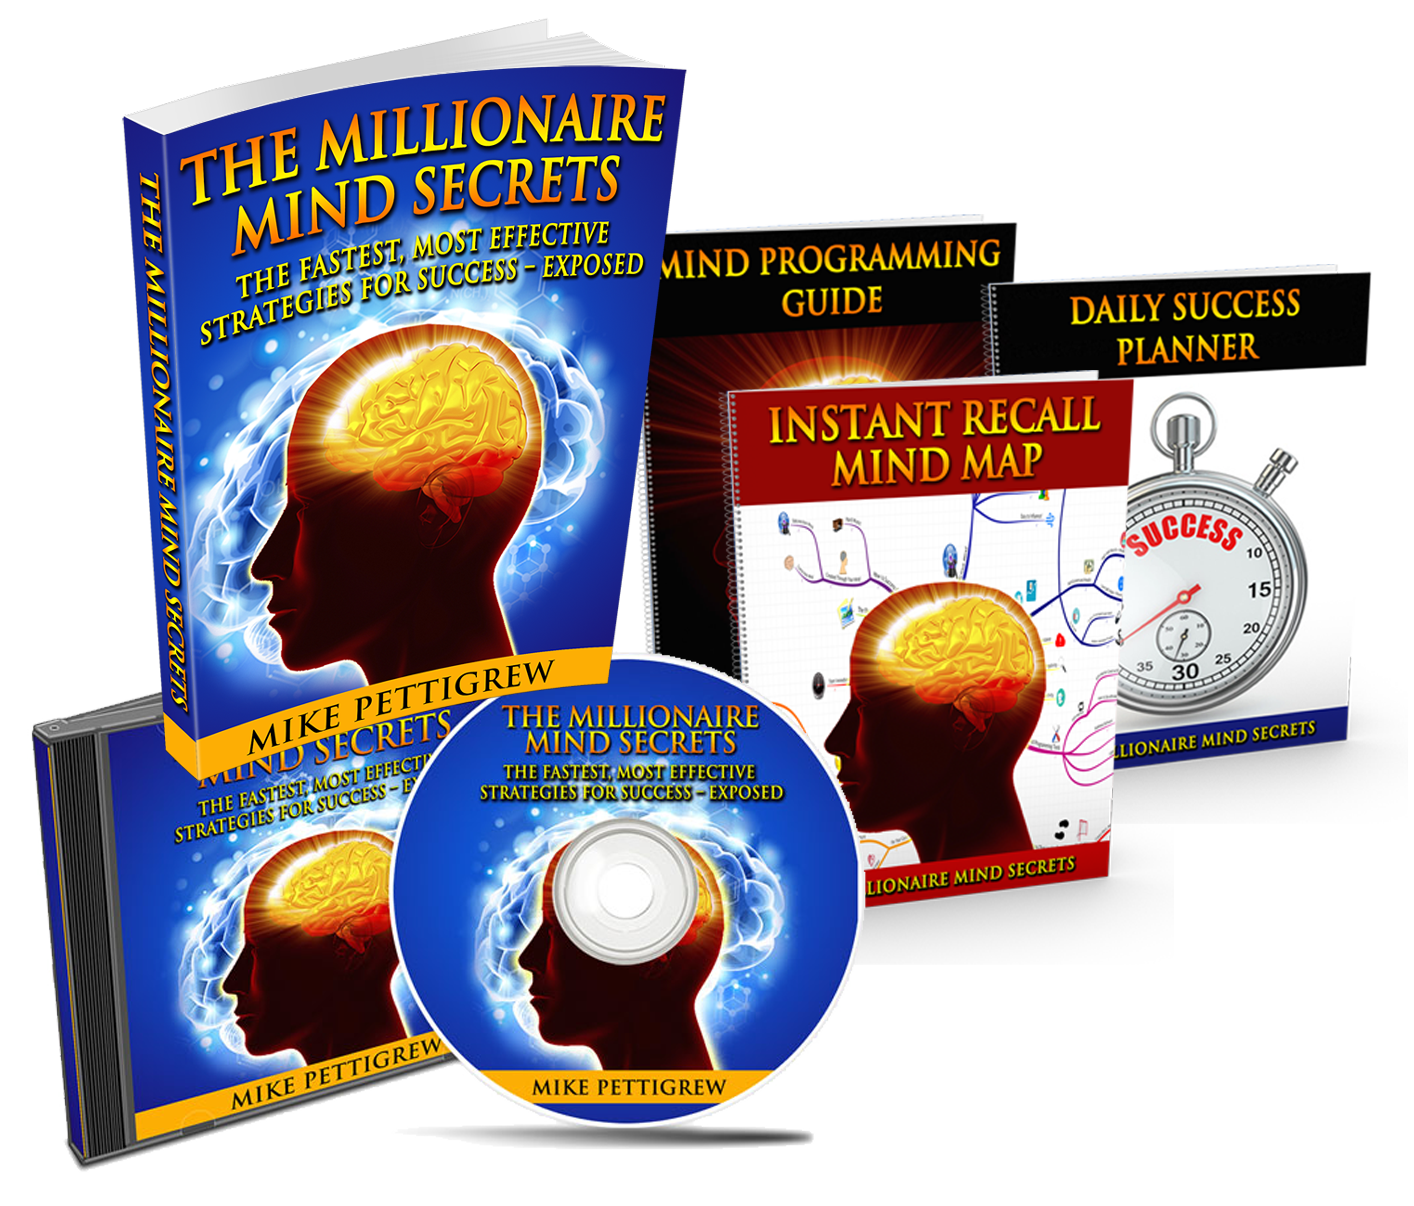 The Millionaire Mind Secrets - The Millionaire Mind Secrets Review